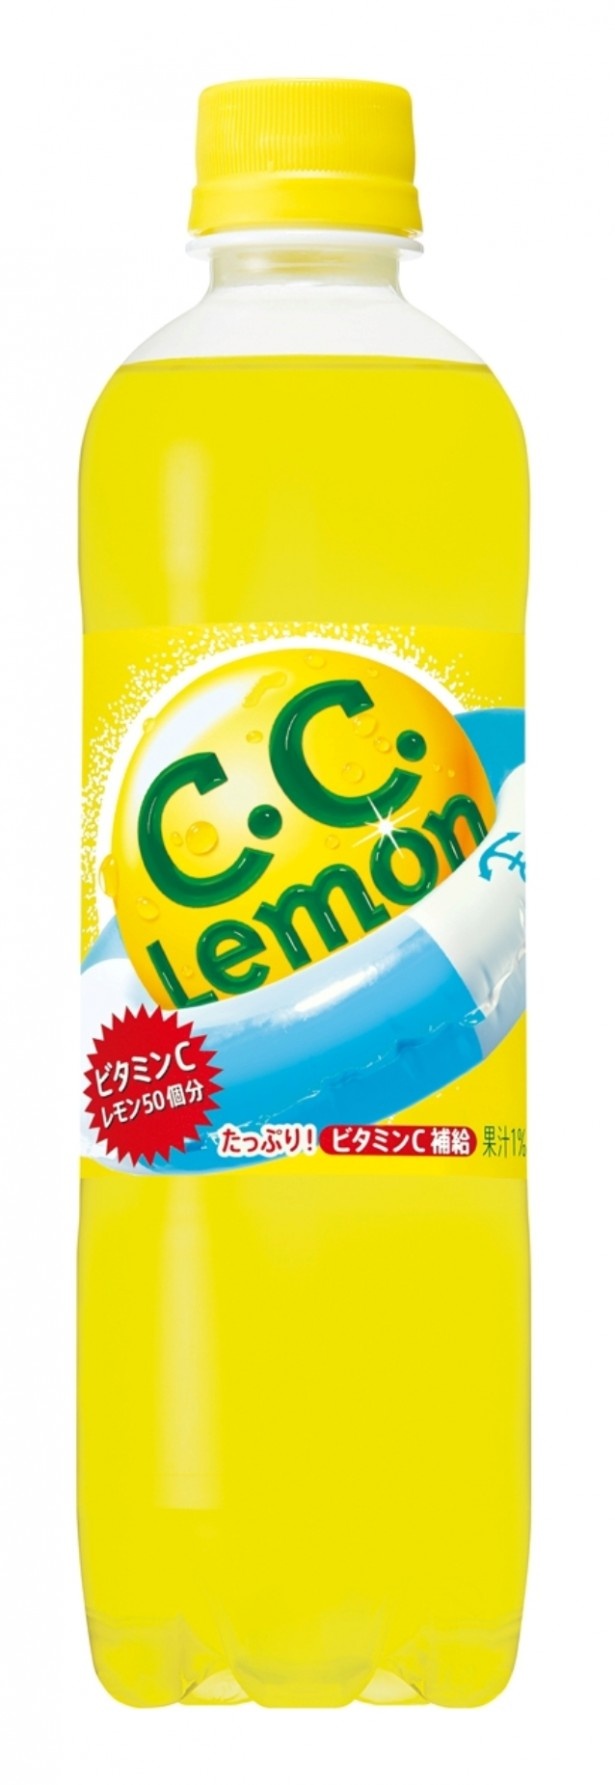 画像4 6 数量限定 すっきりとしたほろ苦さの C C レモン 大人のビターレモン をサークルk サンクス限定で発売 ウォーカープラス